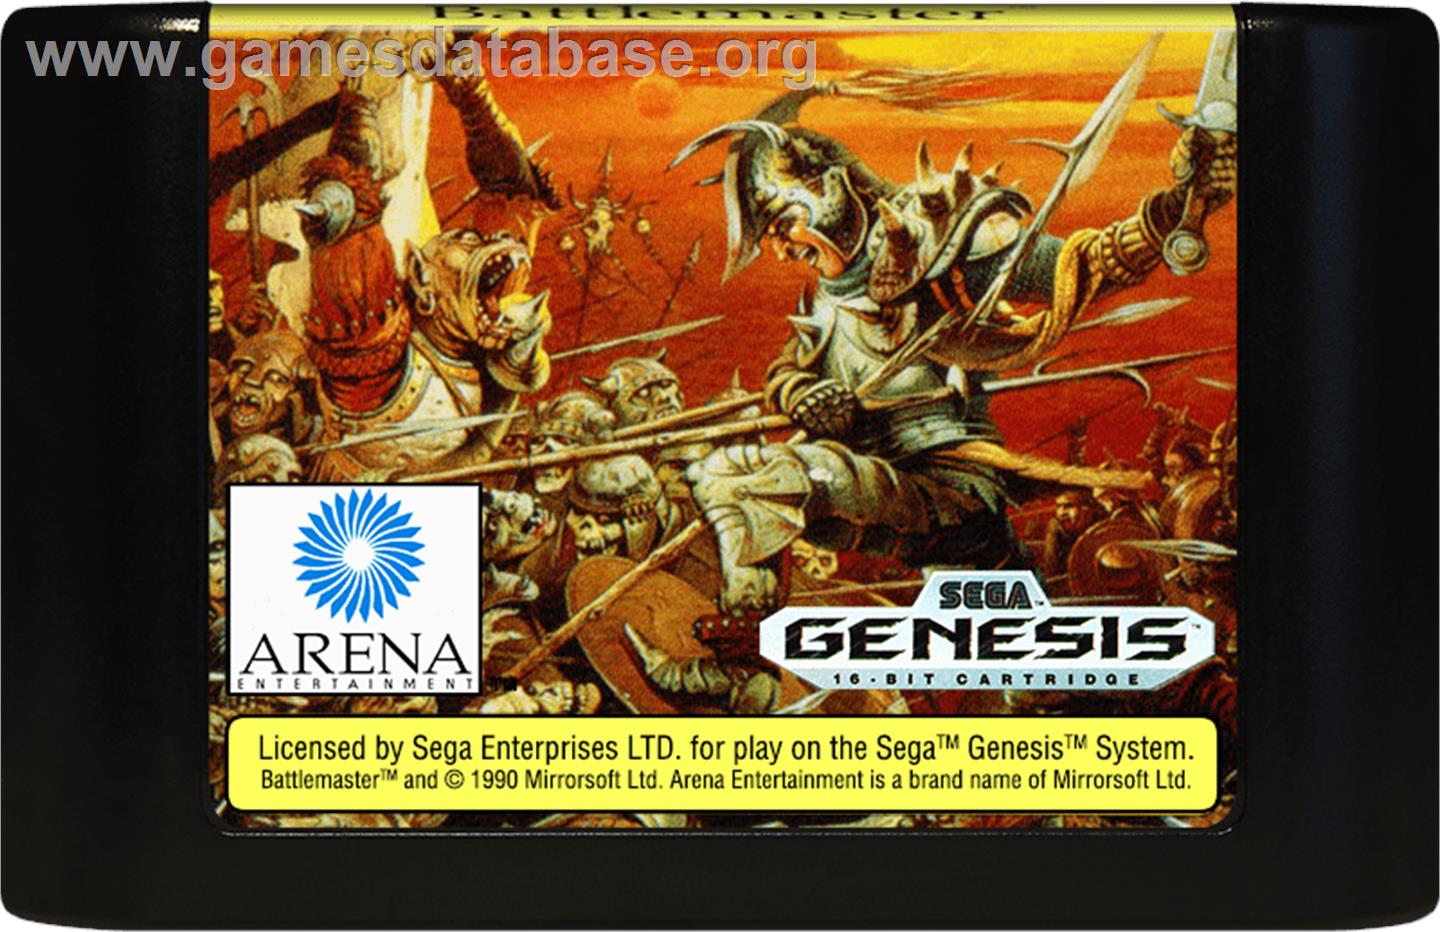 Battle Master - Sega Genesis - Artwork - Cartridge